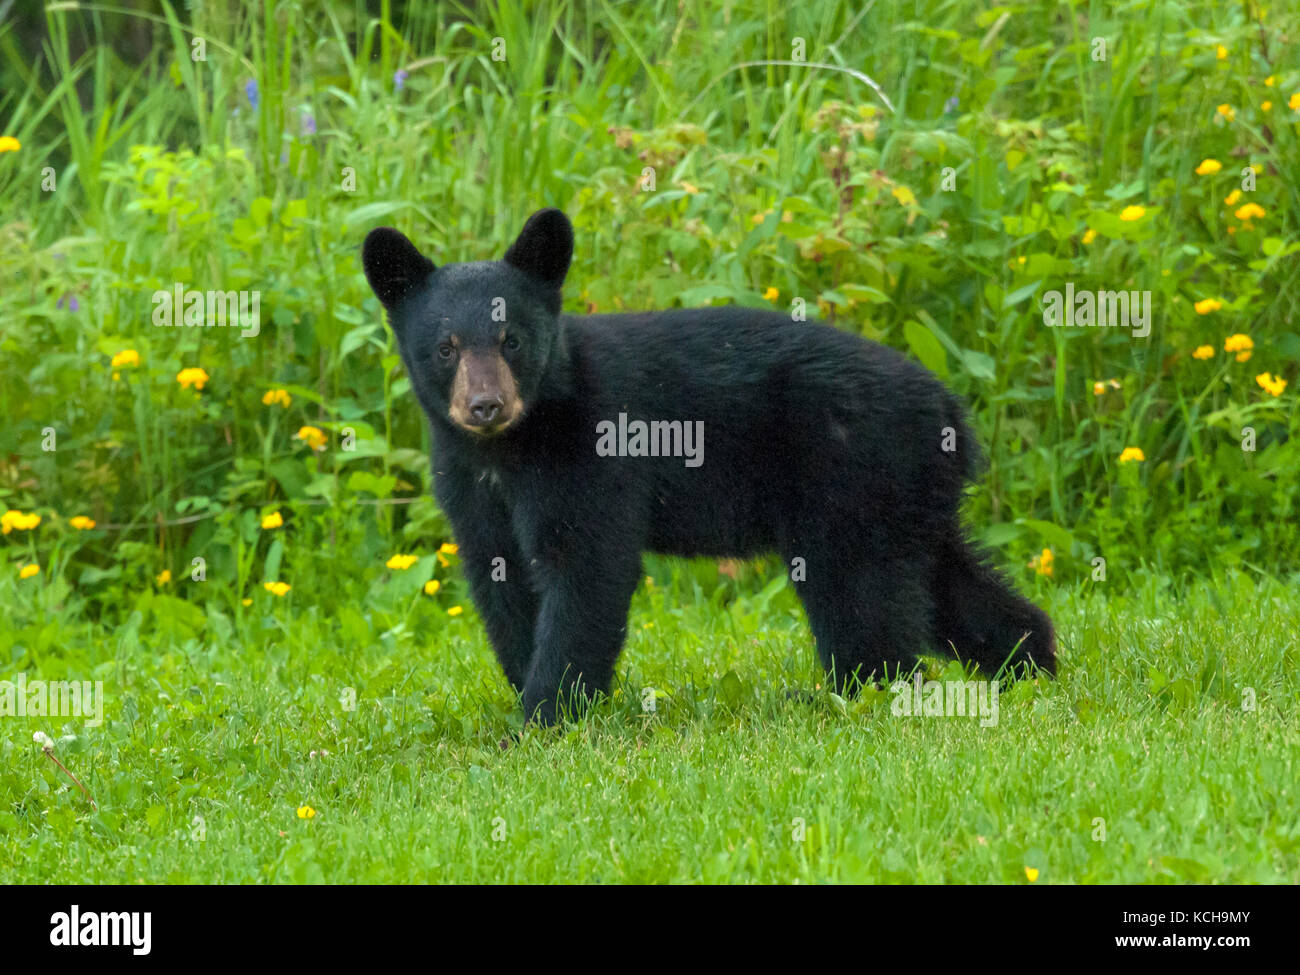 WIld American Black Bear (Ursus americanus) Cub im ersten Jahr, Wandern in blühenden, grünen Wiese in der Nähe von Lake Superior, Ontario Kanada Stockfoto